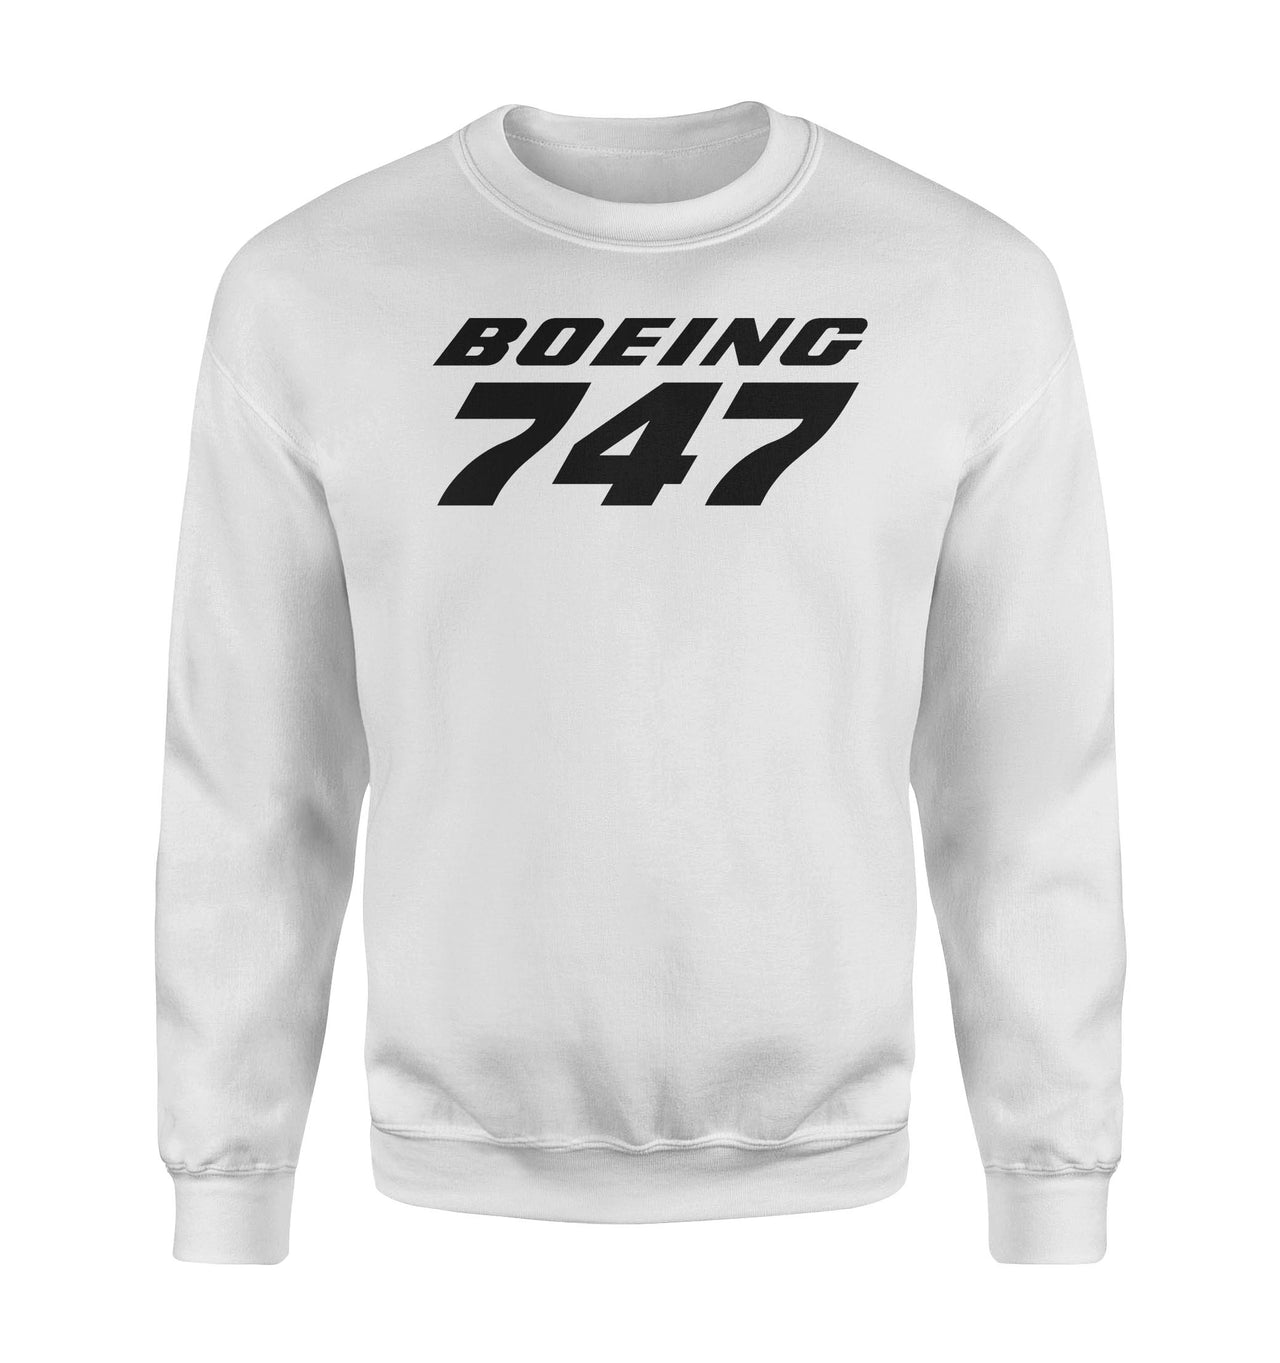 Boeing 747 & Text Designed Sweatshirts